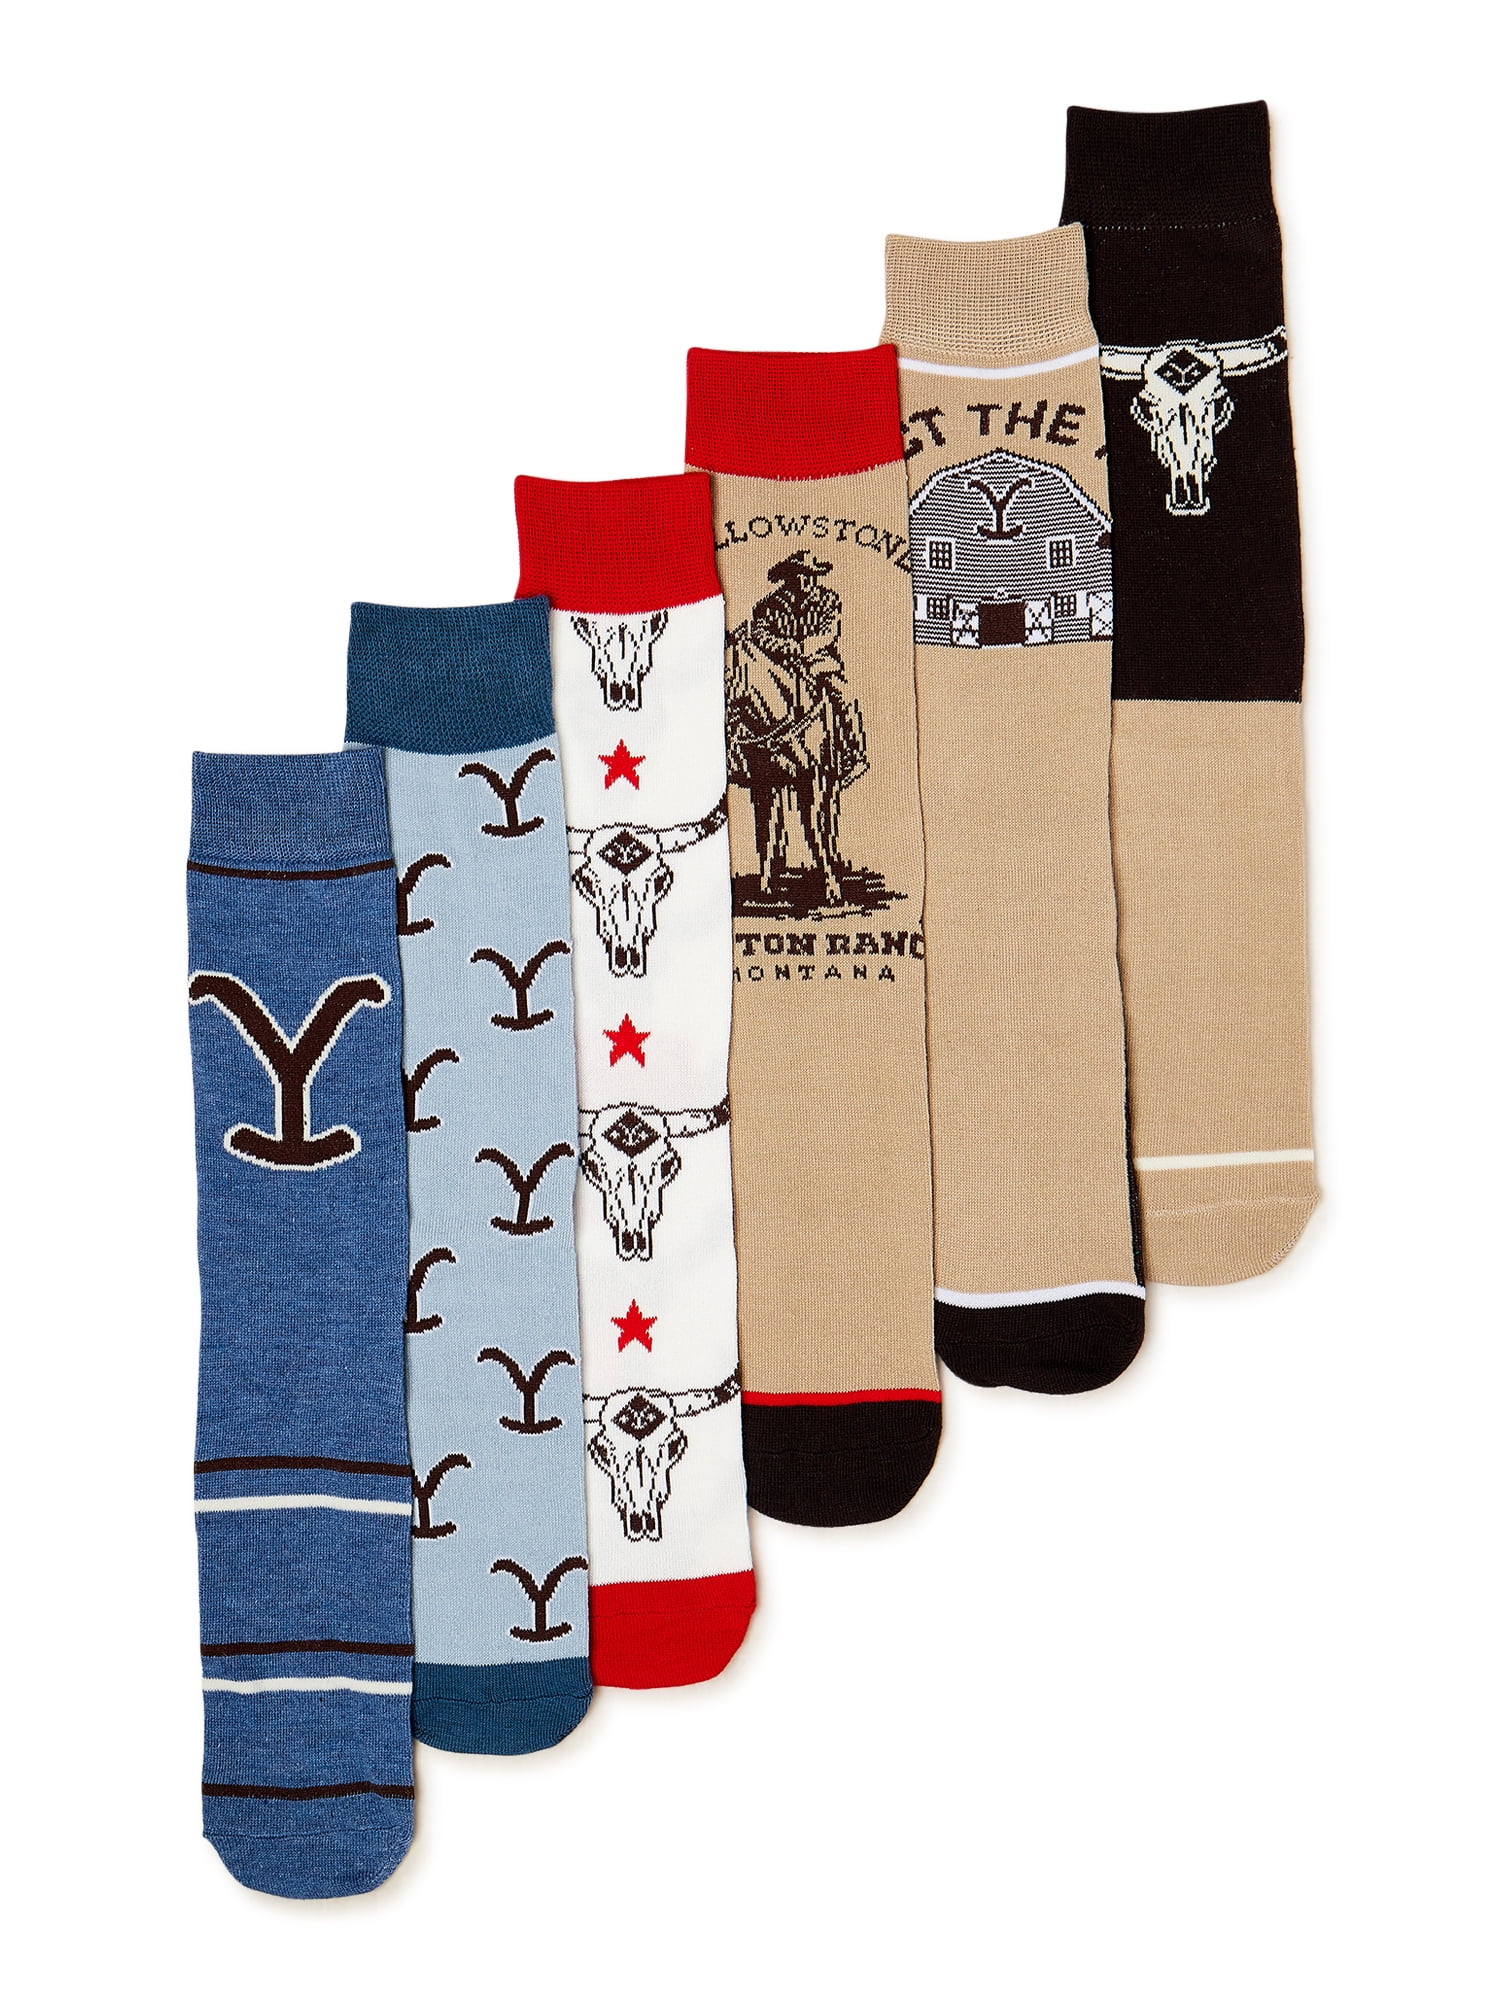 Yellowstone Men's Crew Socks, 6-Pack